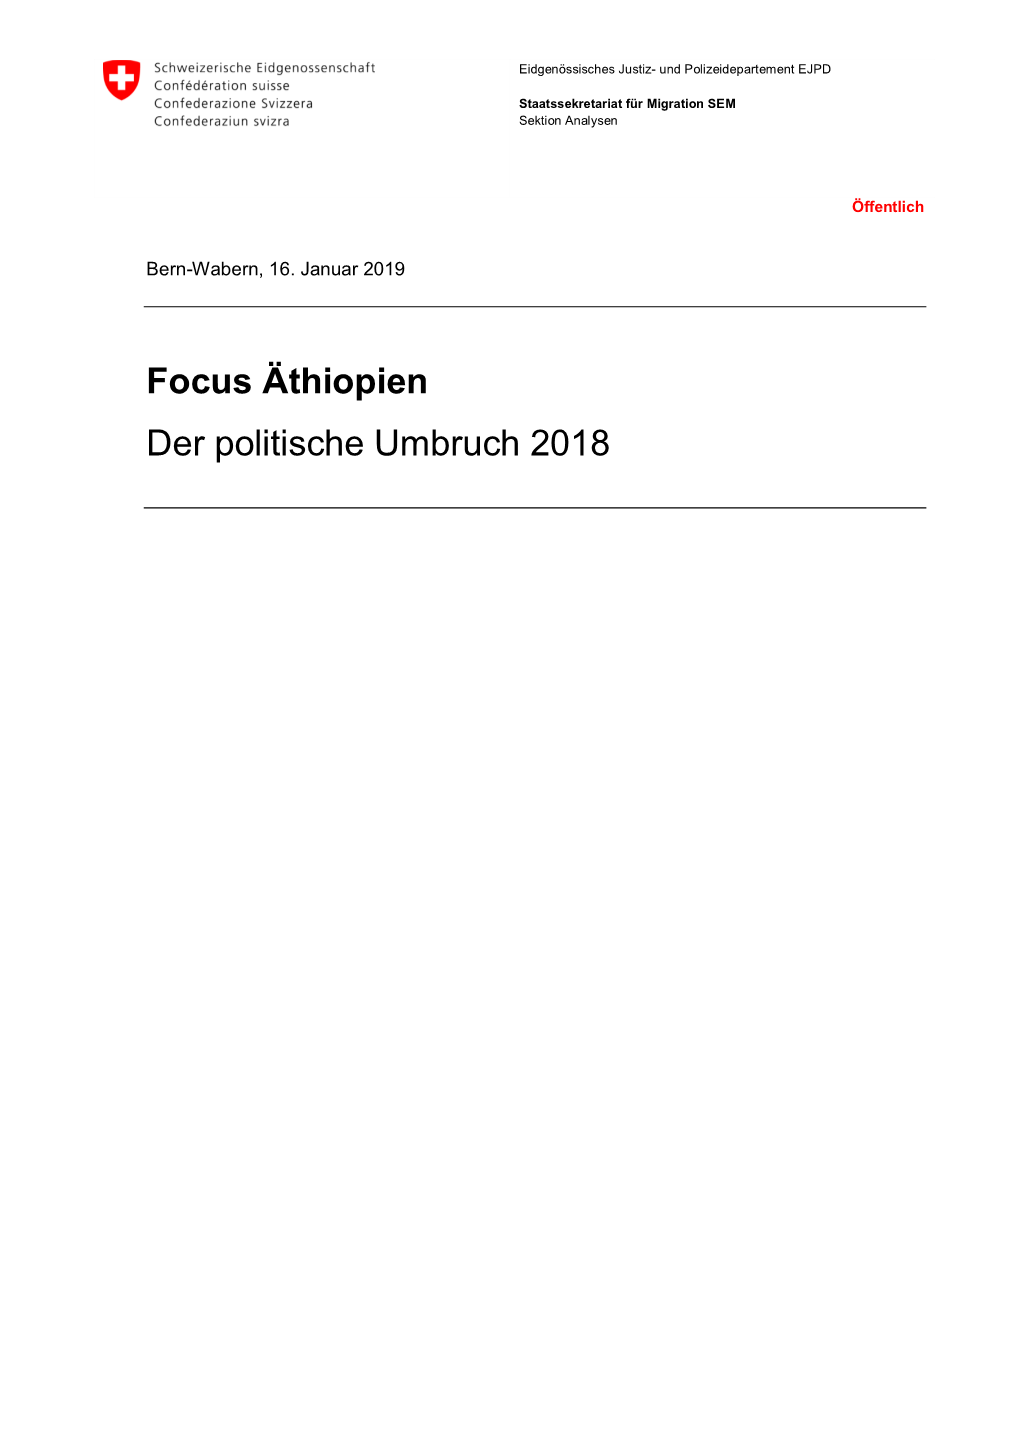 Focus Äthiopien: Der Politische Umbruch 2018 (16.01.2019)